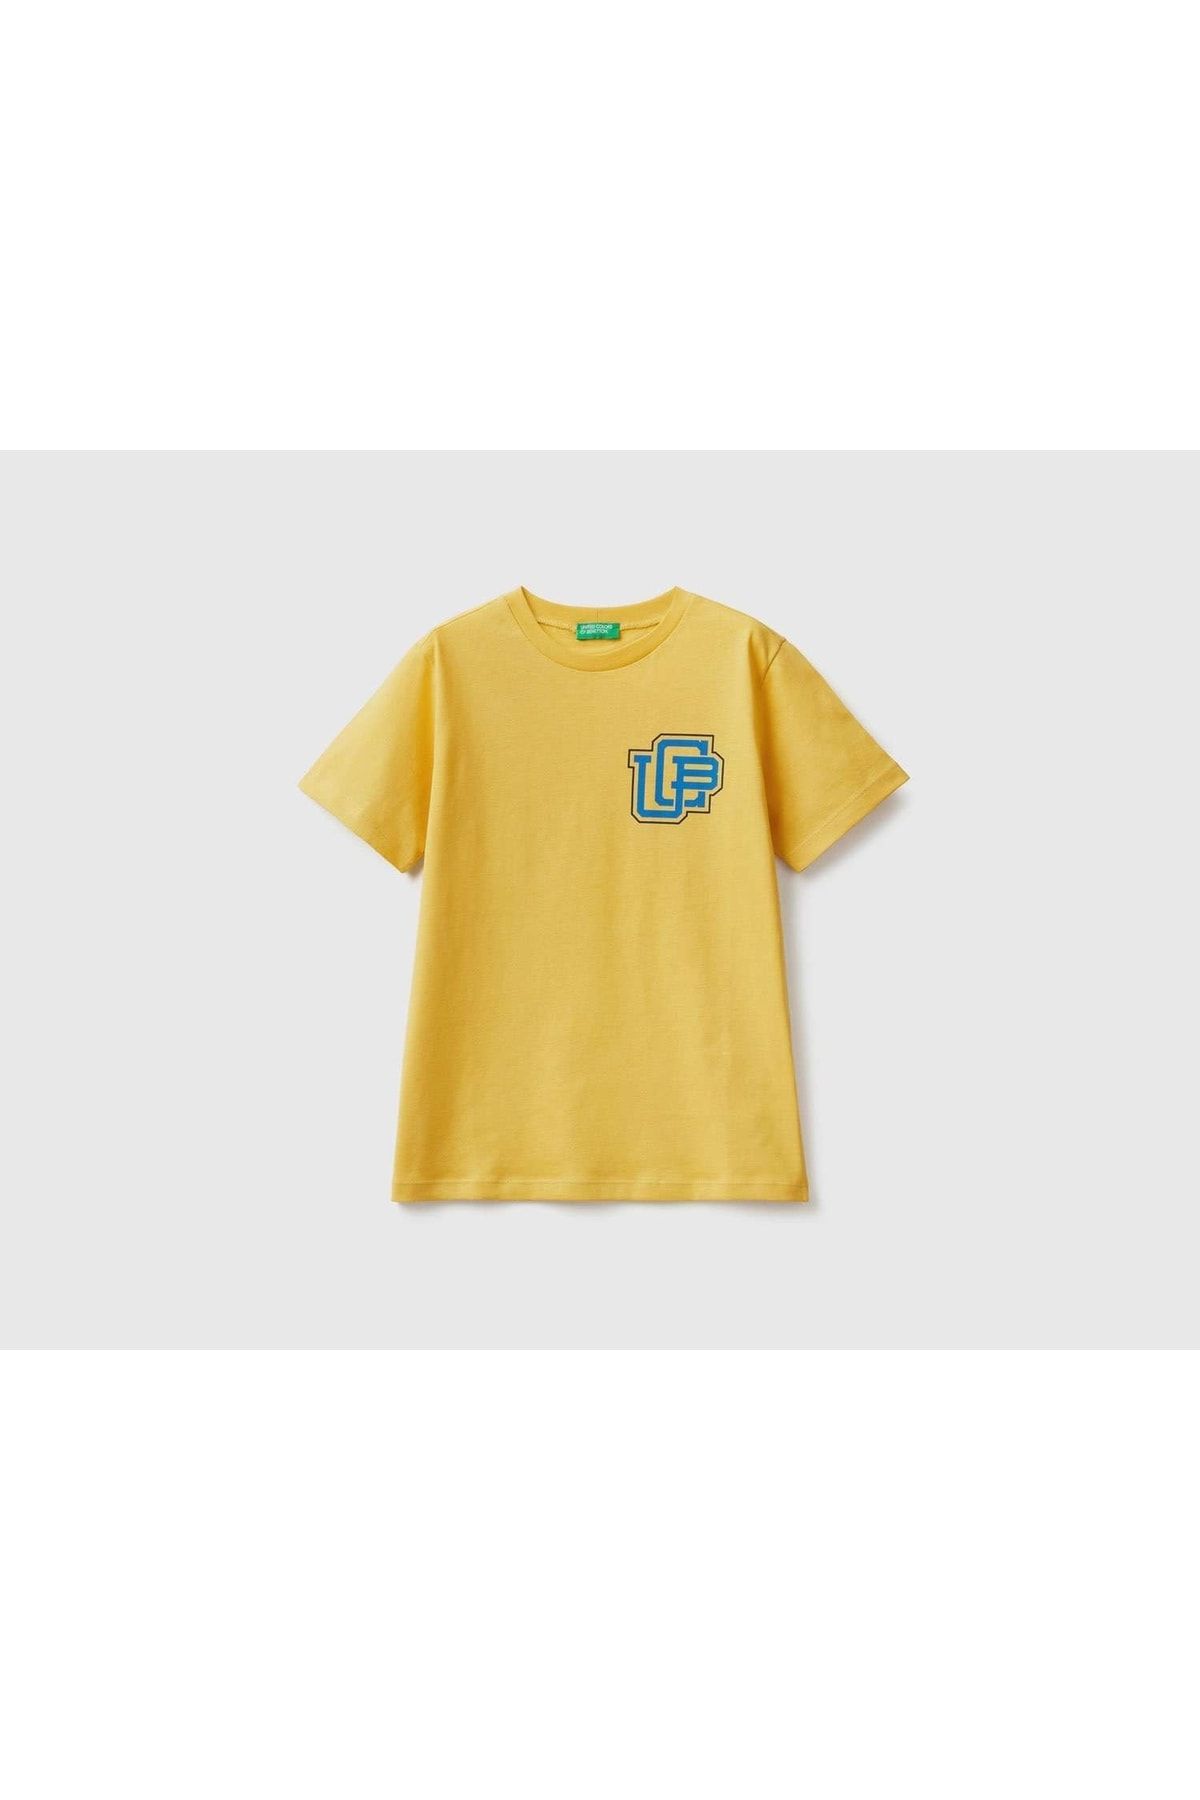 United Colors of Benetton Erkek Çocuk Sarı Benetton Logolu T-shirt